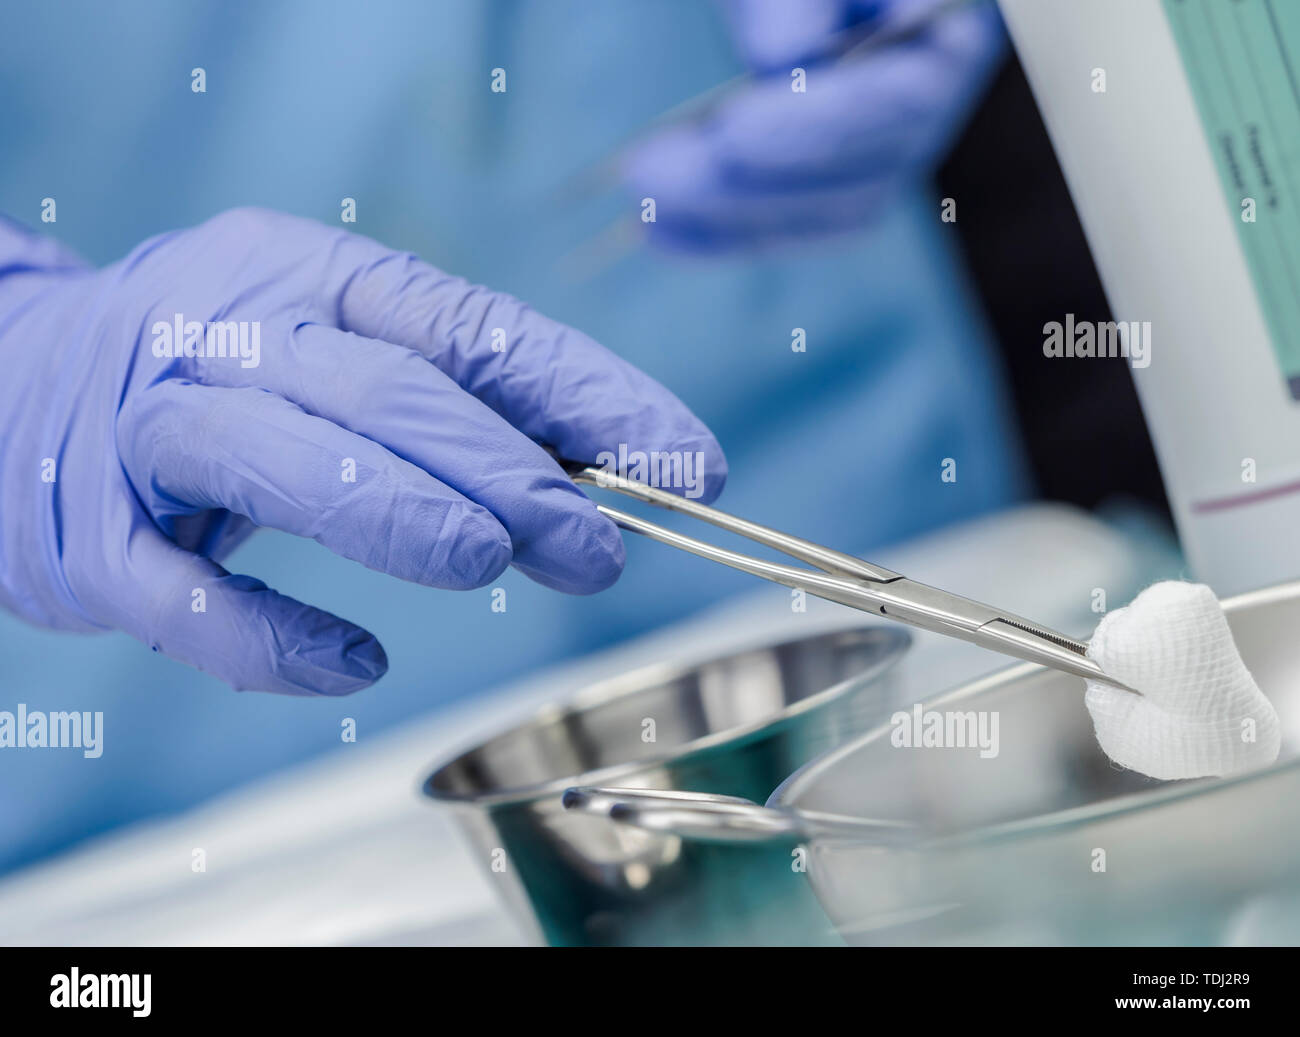 Chirurg im Operationssaal arbeiten, die Hände mit Handschuhen holding Schere mit torunda, konzeptionelle Bild, horizontale Zusammensetzung Stockfoto